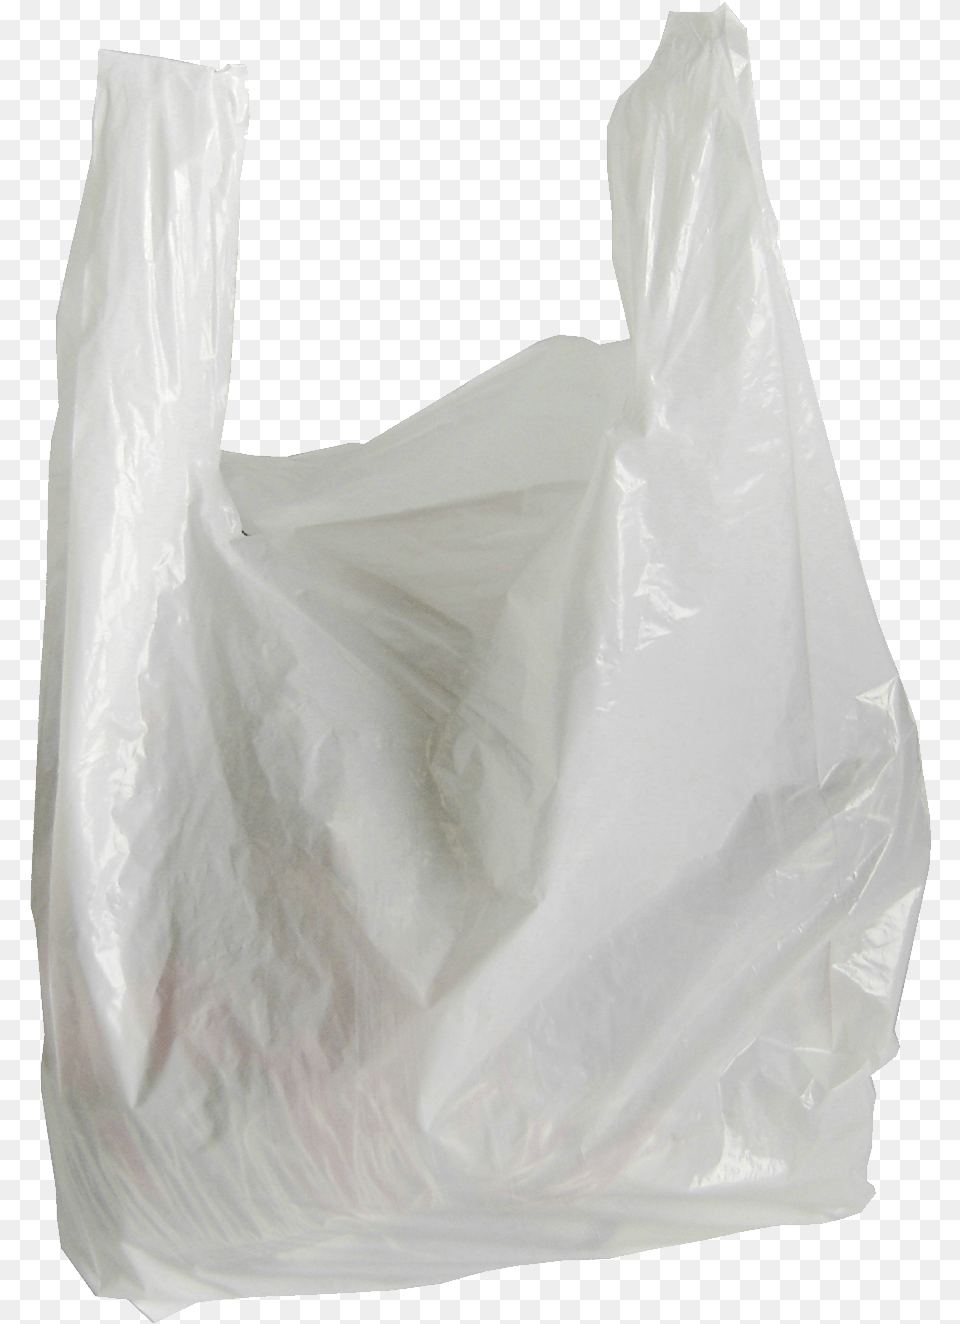 Plastic Bag Plastic Bag No Background, Plastic Bag, Diaper Png